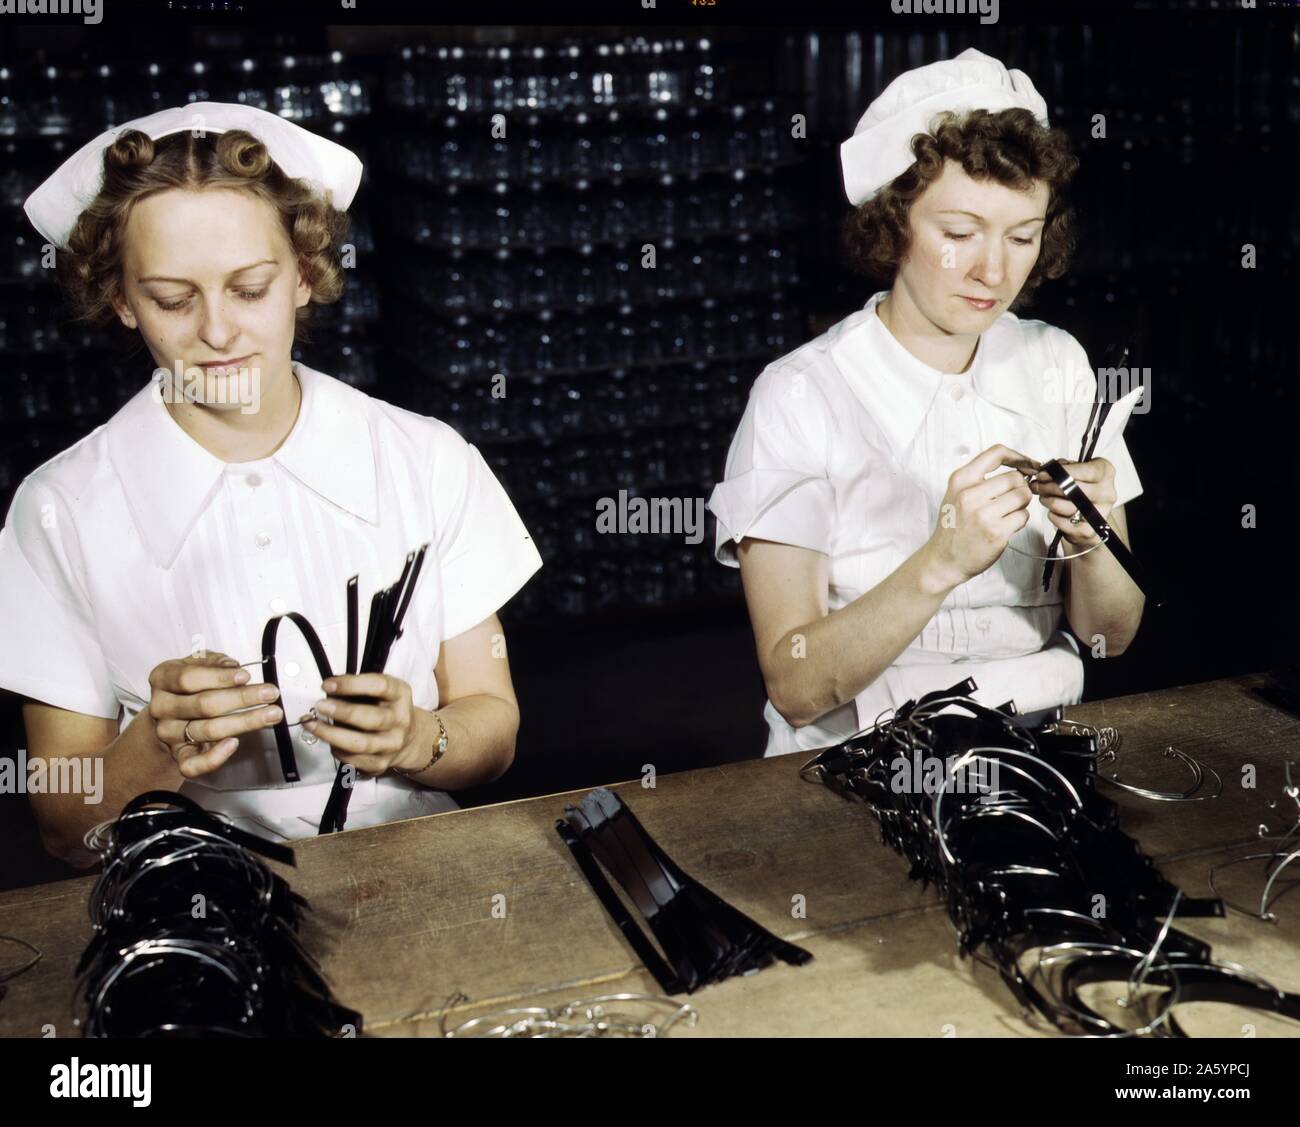 Photographie couleur de femmes Marine, Eva Herzberg et Elfe Burnham, l'assemblage de bandes pour les transfusions sanguines des bouteilles sur les laboratoires Baxter. Photographié par Howard R. Holl photographe américain. Datée 1942 Banque D'Images